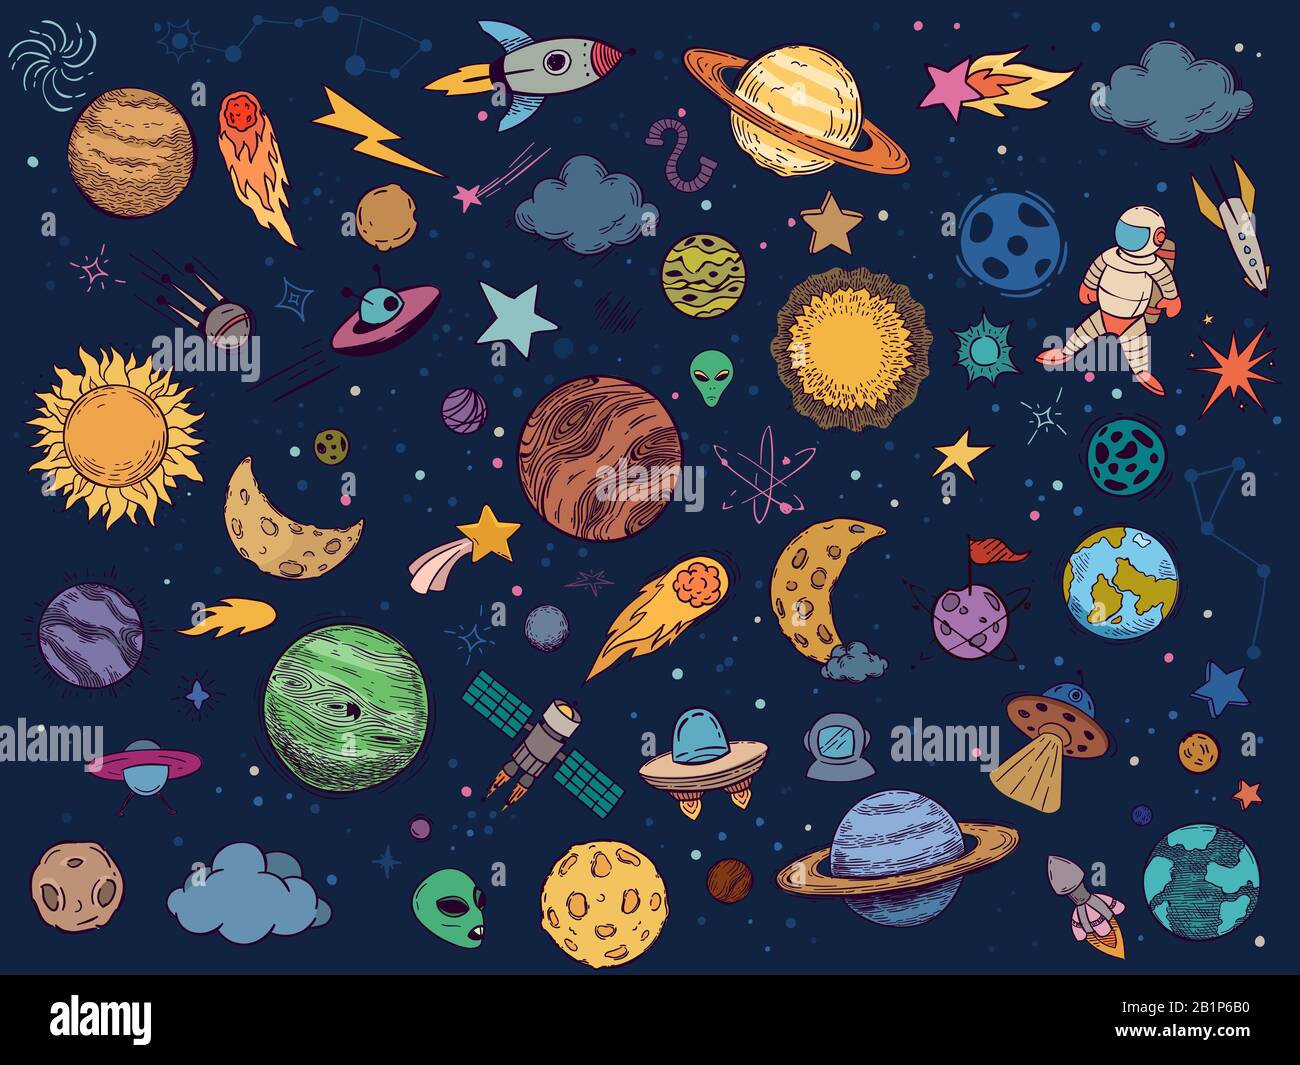 Farbraum doodle. Astrologieplaneten, bunte Raumdarstellung und handgezogene Raketenvektorillustration gesetzt. Cosmic Stickers im Cartoon-Stil. Himmelskörper Stock Vektor